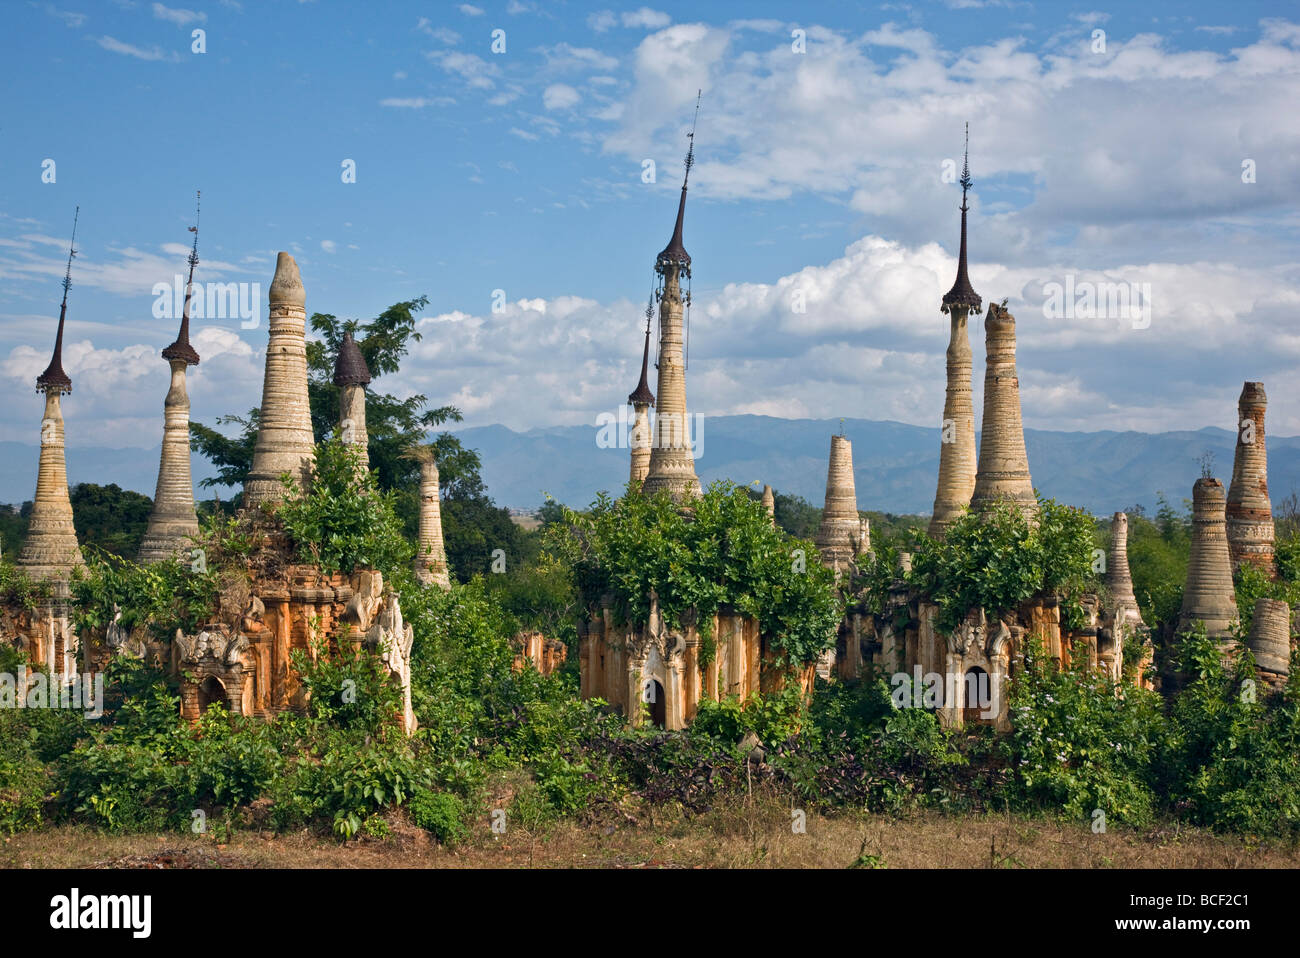 Le Myanmar, Birmanie, le lac Inle. Ruines de vieux temples bouddhistes stupas et à la pagode Shwe Inn Tain non restaurés. Banque D'Images